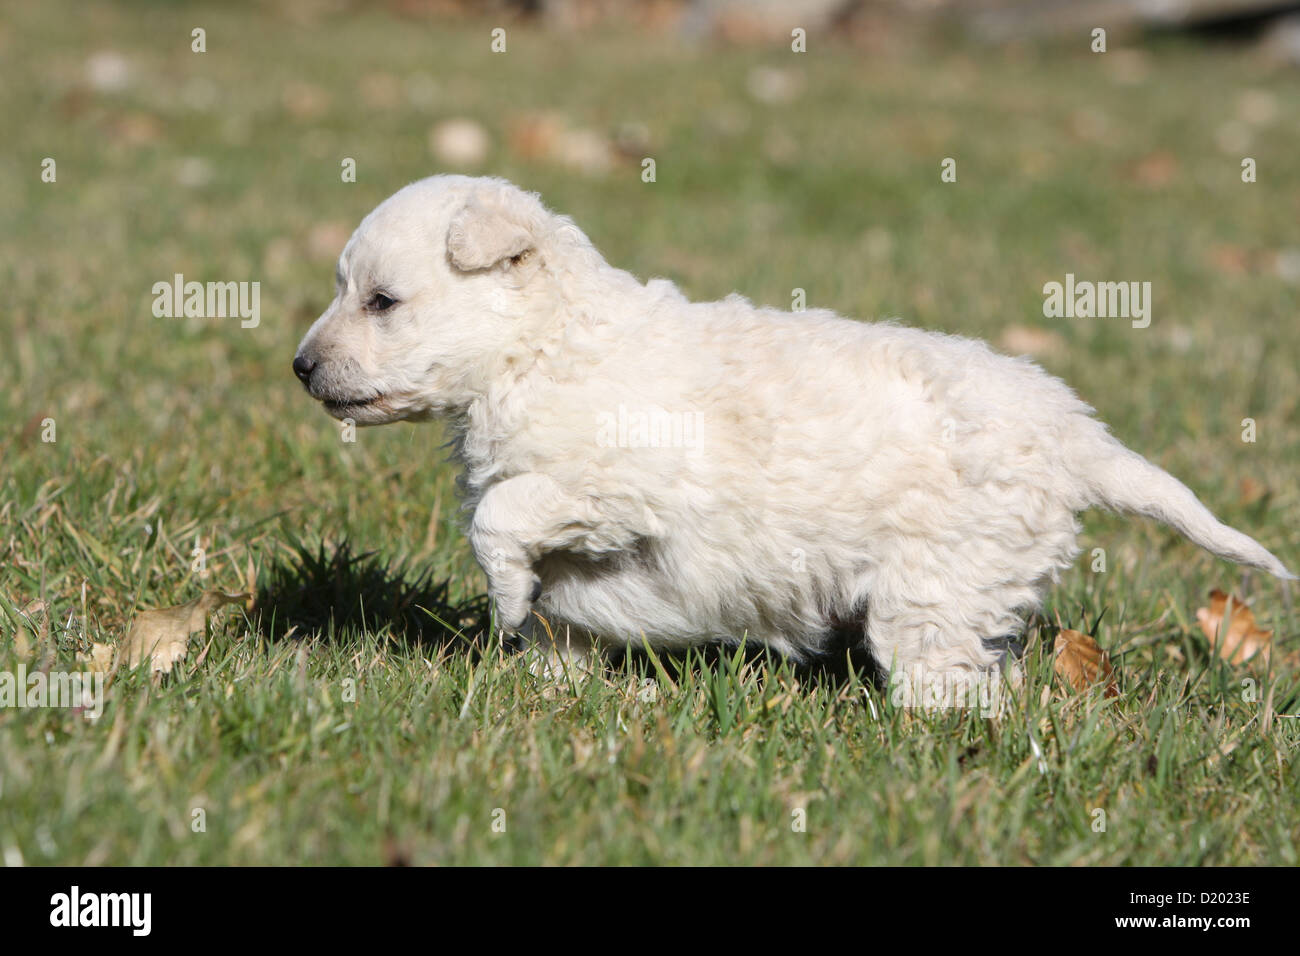 Dog Mudi (Hungarian sheepdog) puppy white standing paw raised Stock Photo